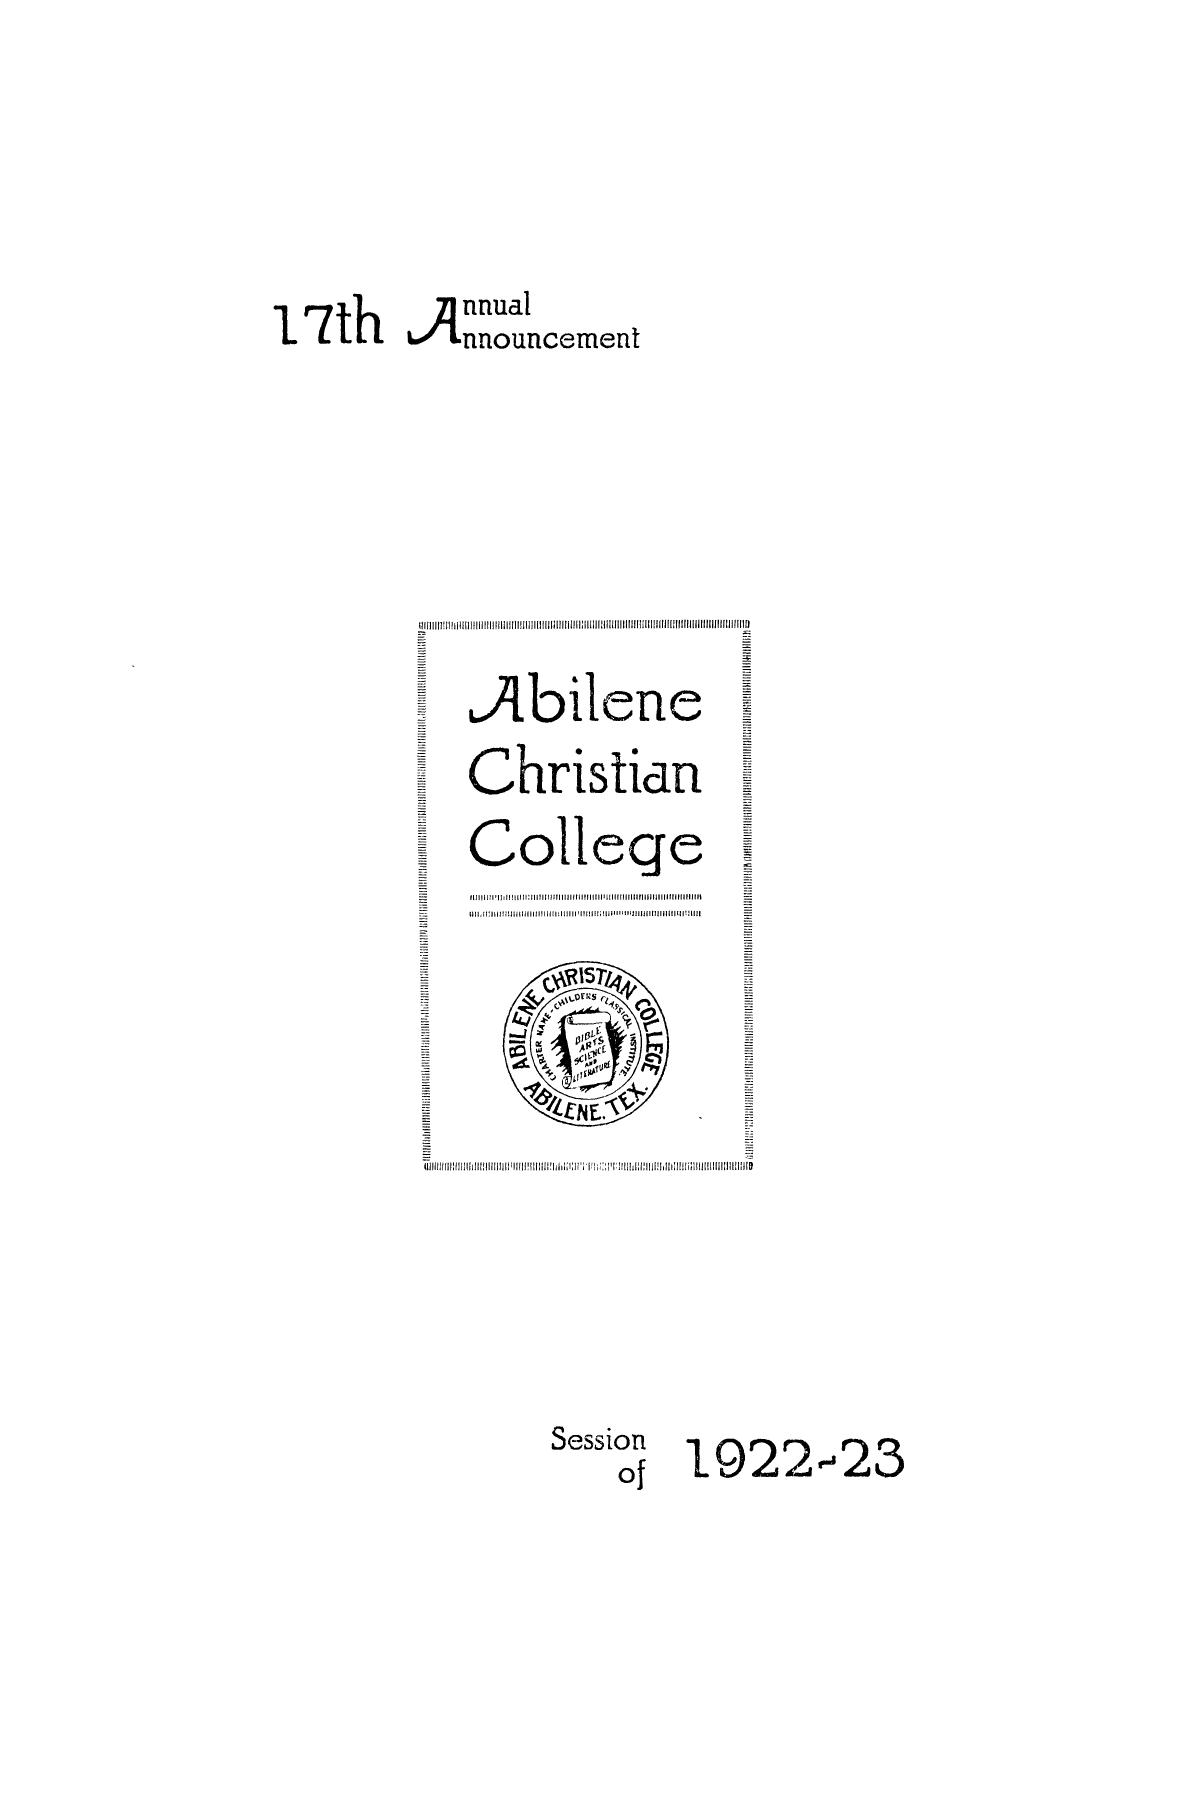 Catalog of Abilene Christian College, 1922-1923
                                                
                                                    1
                                                